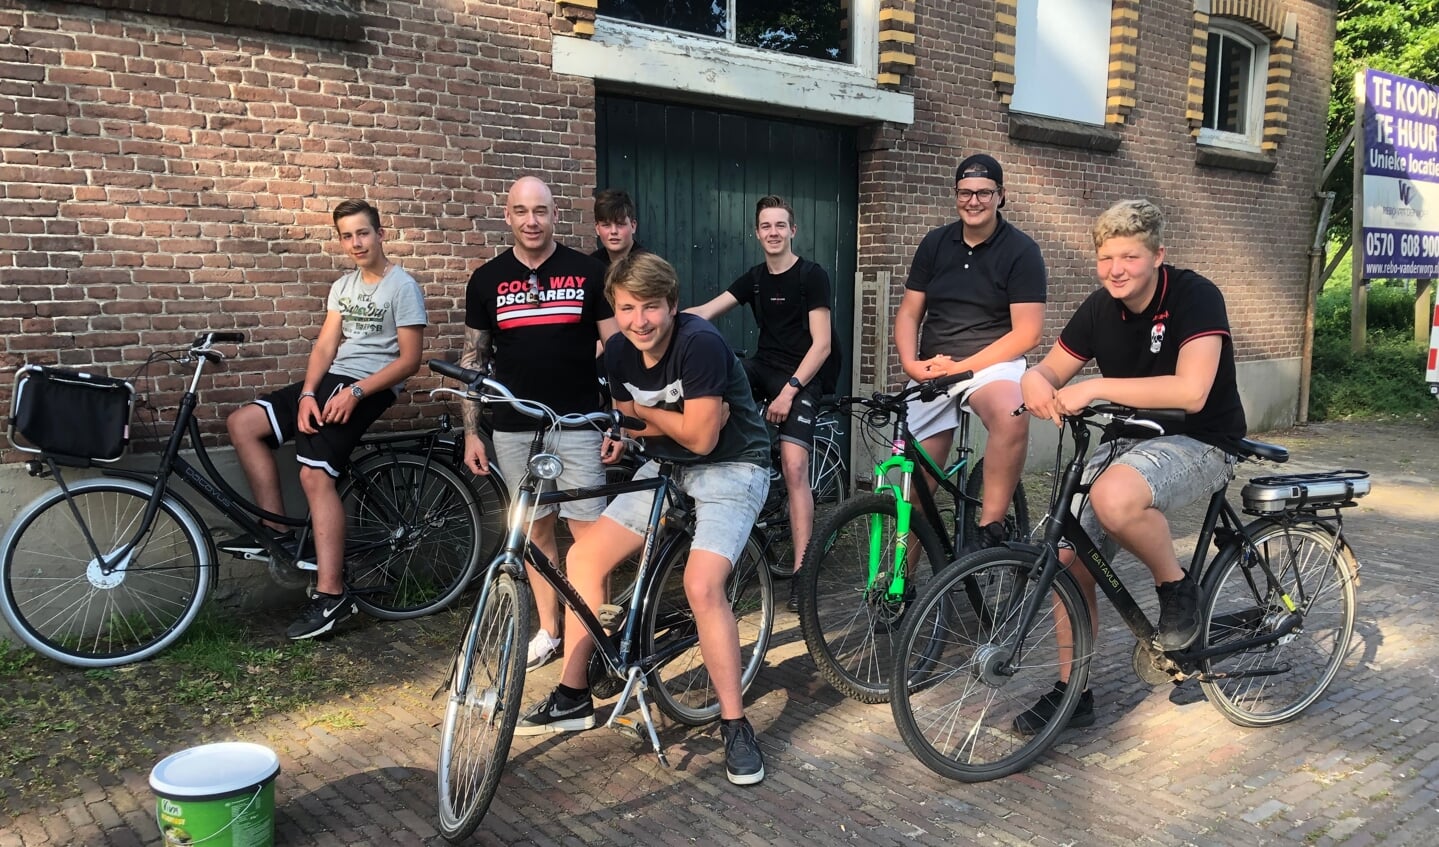 De groep jongeren met de jongerenwerker Paul Koopman van de gemeente Bronckhorst. Foto: Harry Jansen